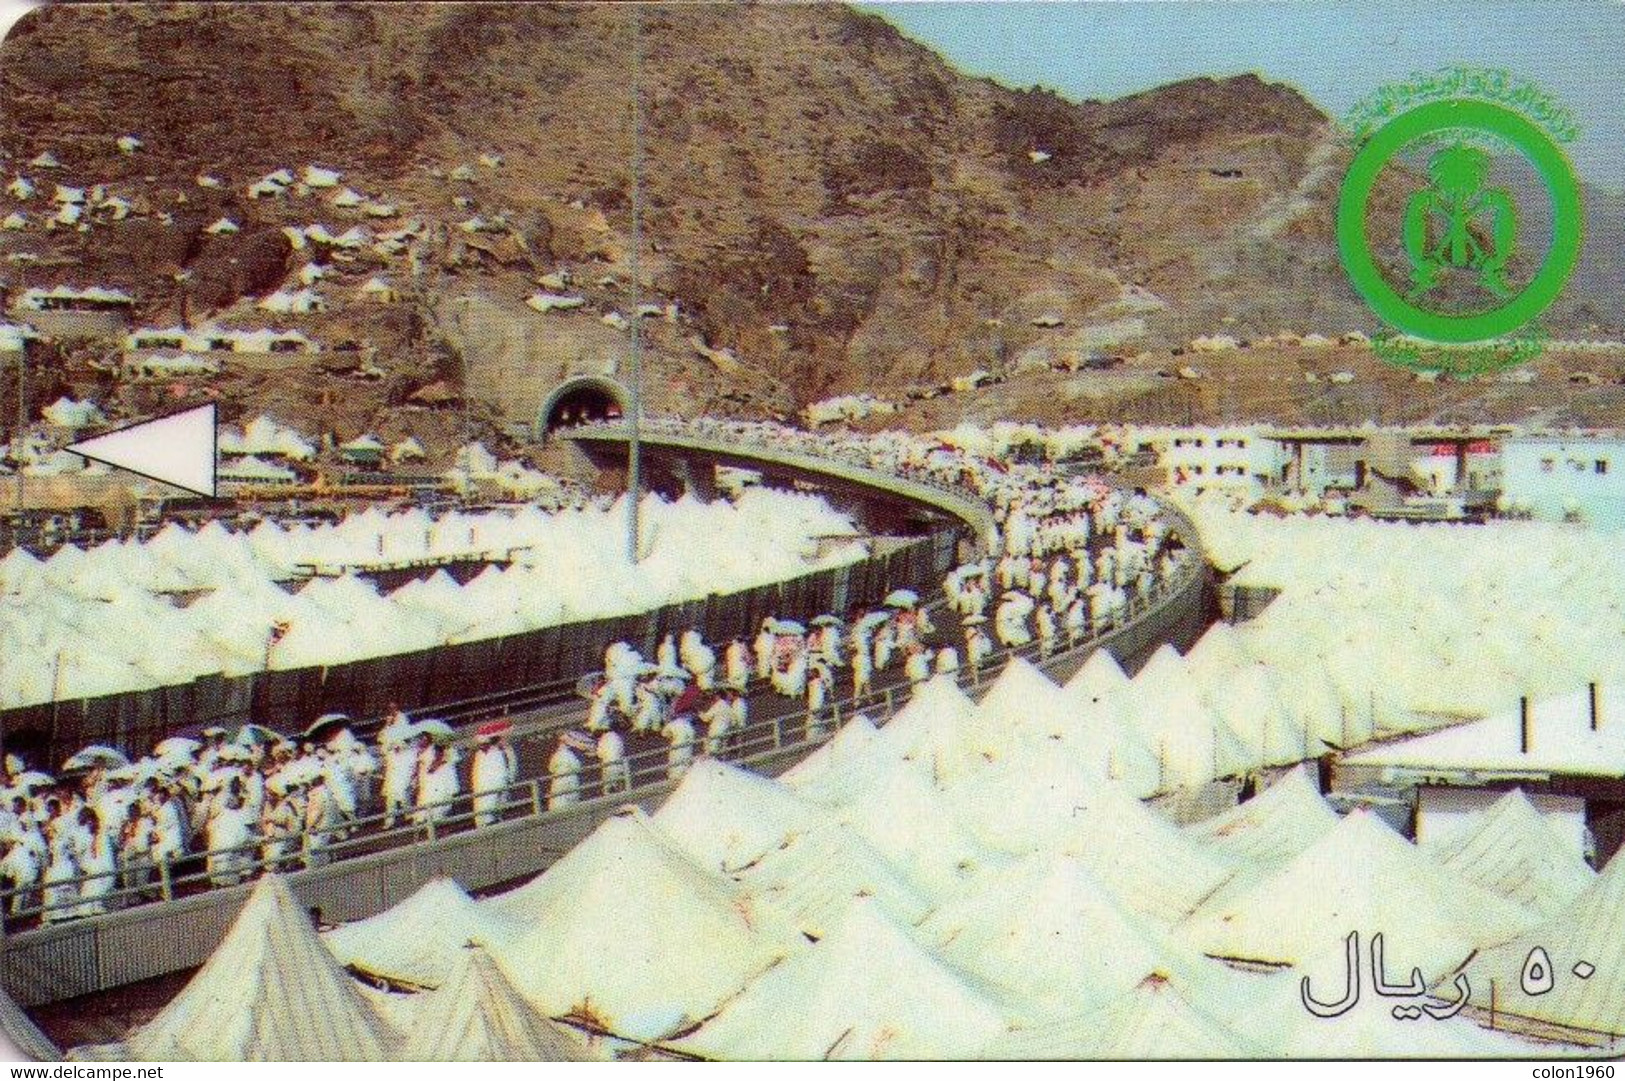 ARABIA SAUDITA. Mecca Tunnel Entrance "SAUDE". 1993. SA-STC-0003 (SAUDE). (008) - Saudi-Arabien